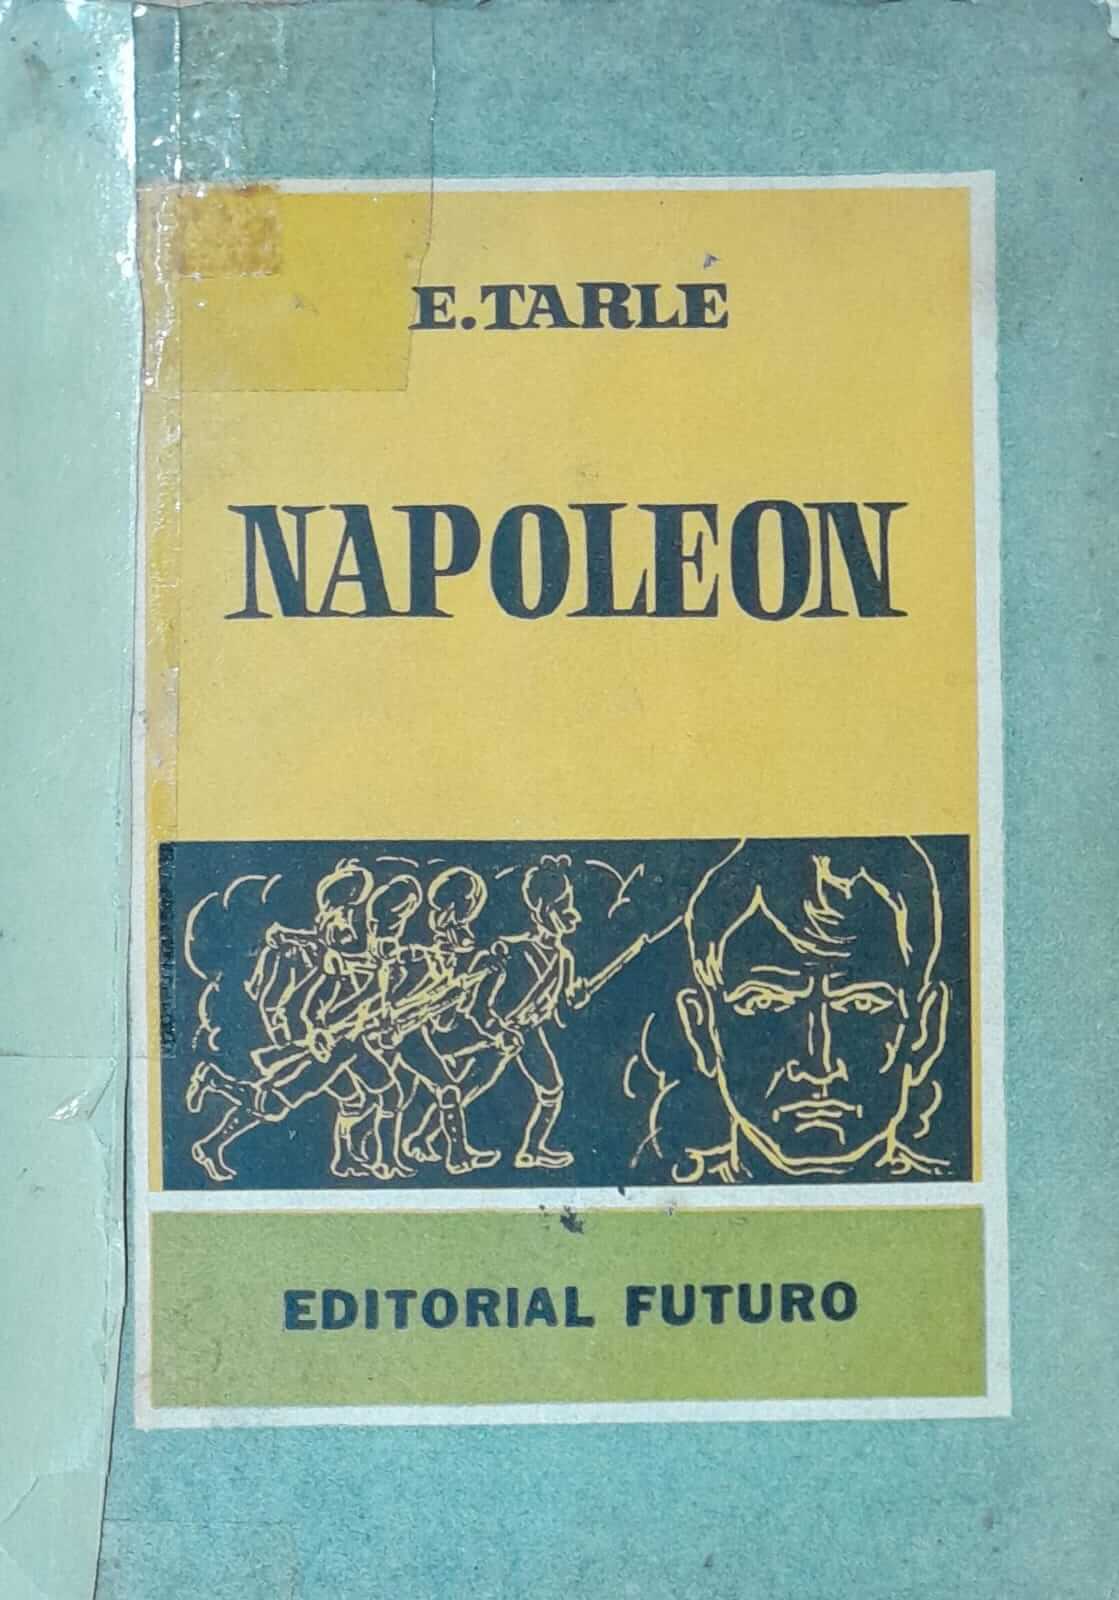 Napoleón de E.tarle